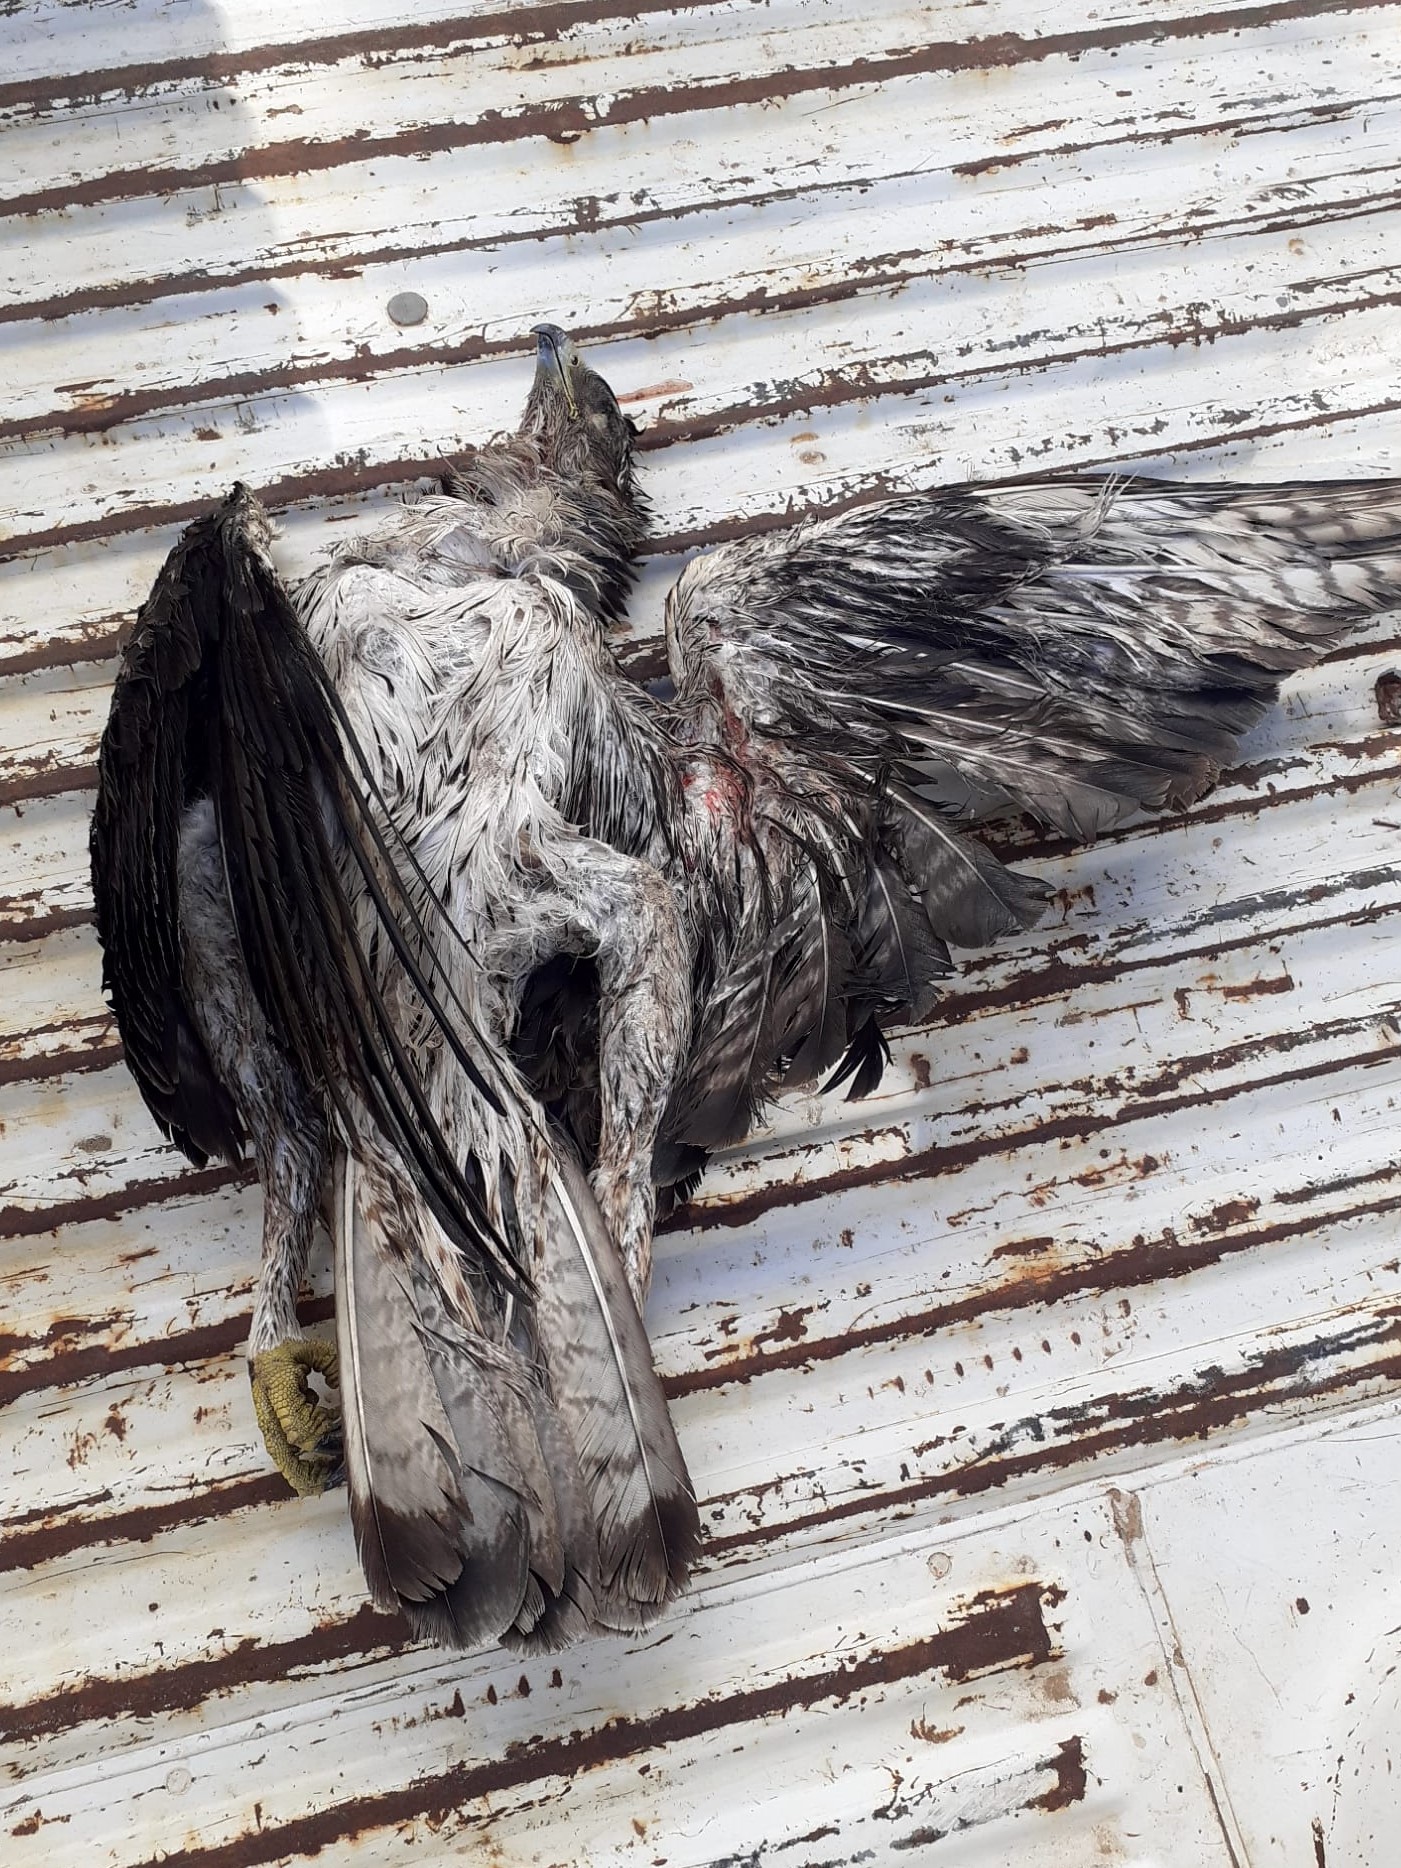 Águila perdicera hallada muerta esta semana bajo el cableado de un tendido eléctrico valenciano no señalizado. Imagen: SOV